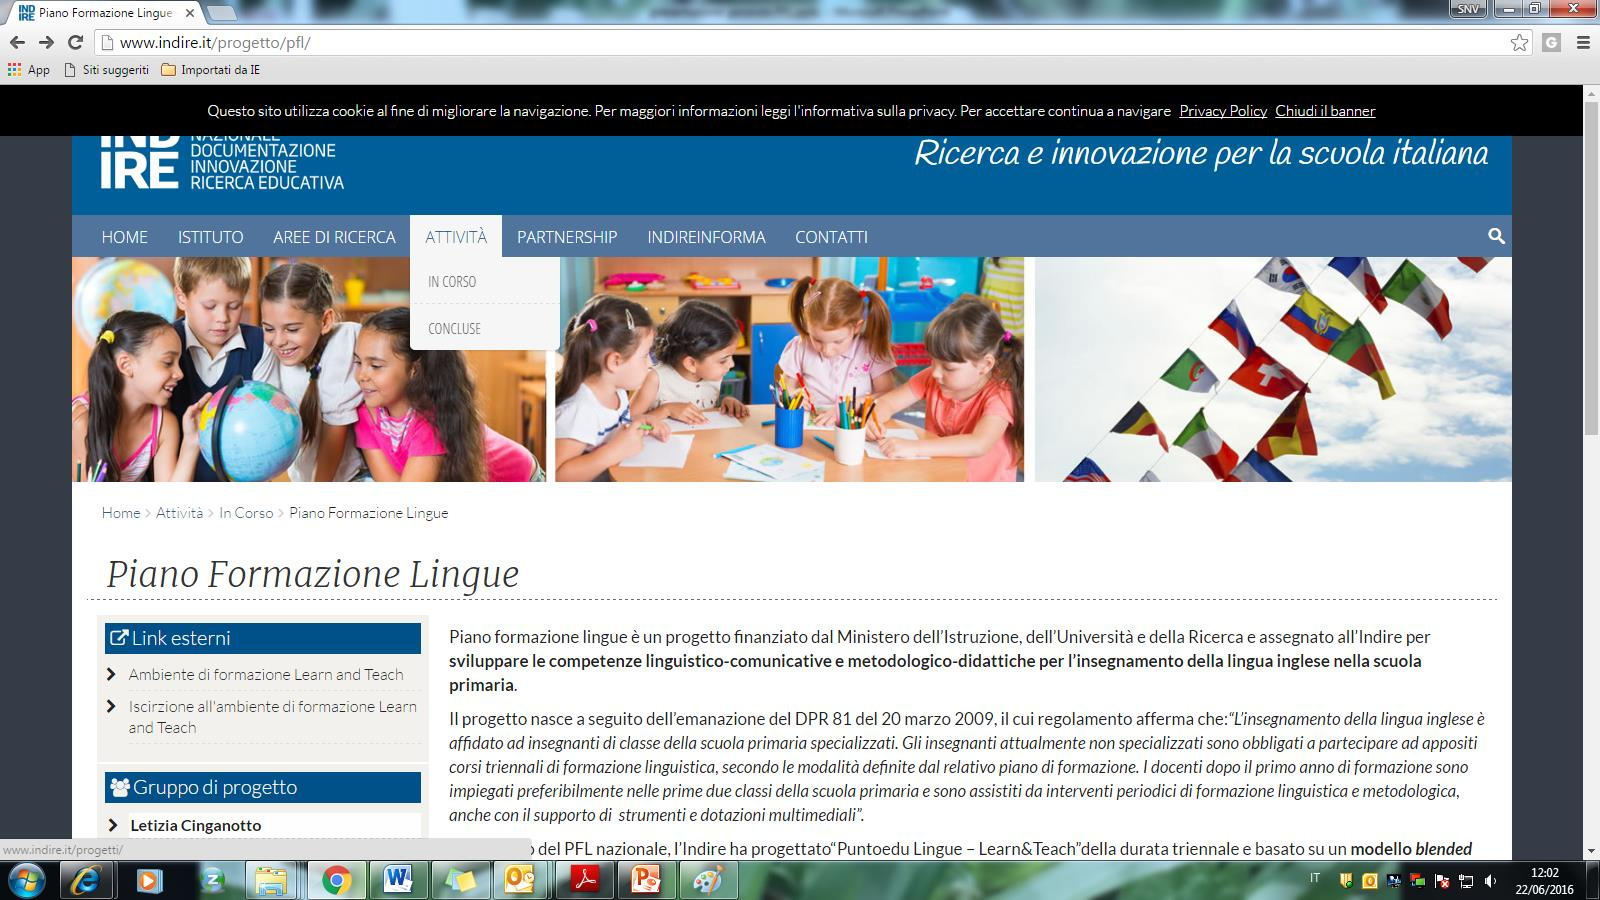 Il progetto per sviluppare le competenze linguistico-comunicative e metodologico-didattiche per l insegnamento della lingua inglese nella scuola